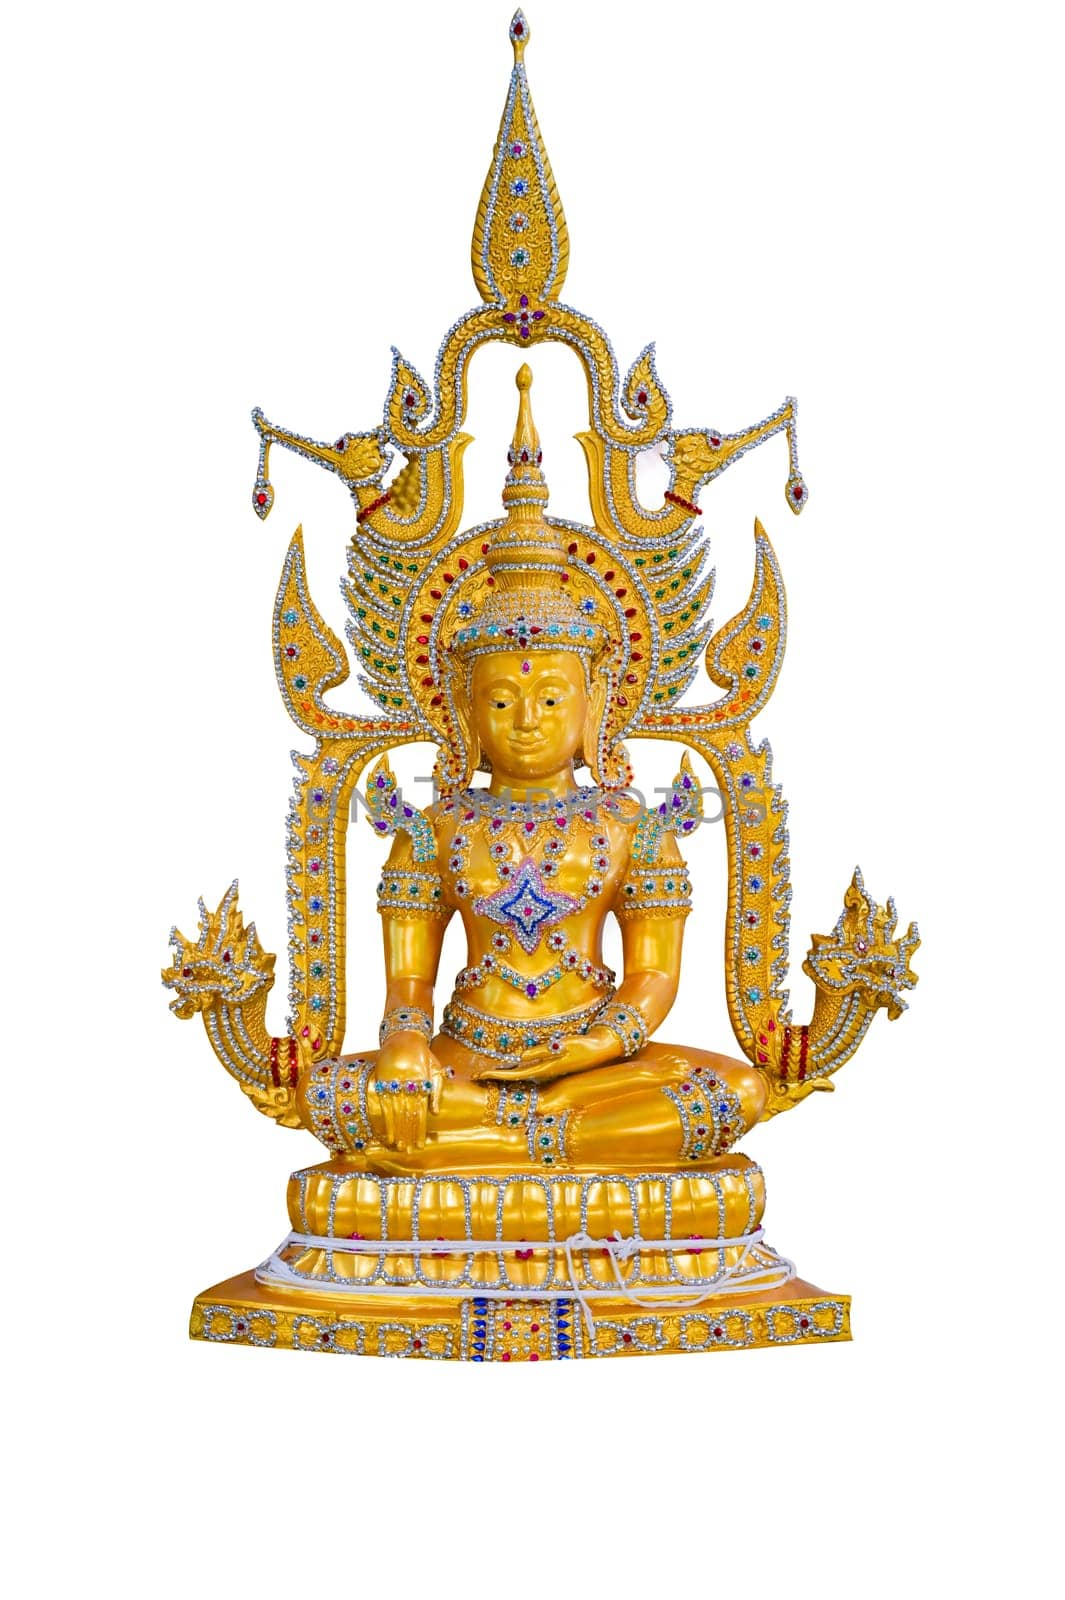 Buddha image on white background isolate by sarayut_thaneerat